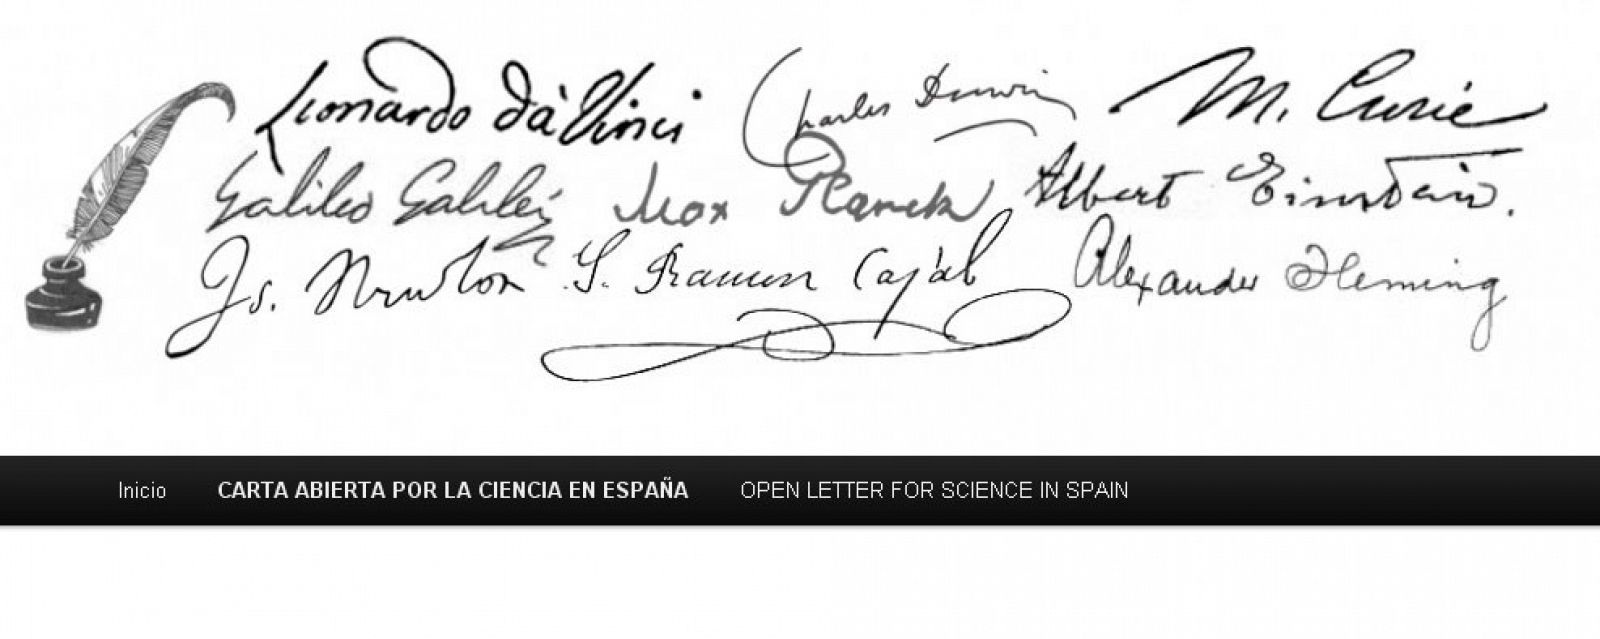 La carta abierta será entregada junto con los nombres de los firmantes, a Rajoy y a los miembros del Congreso y el Senado.